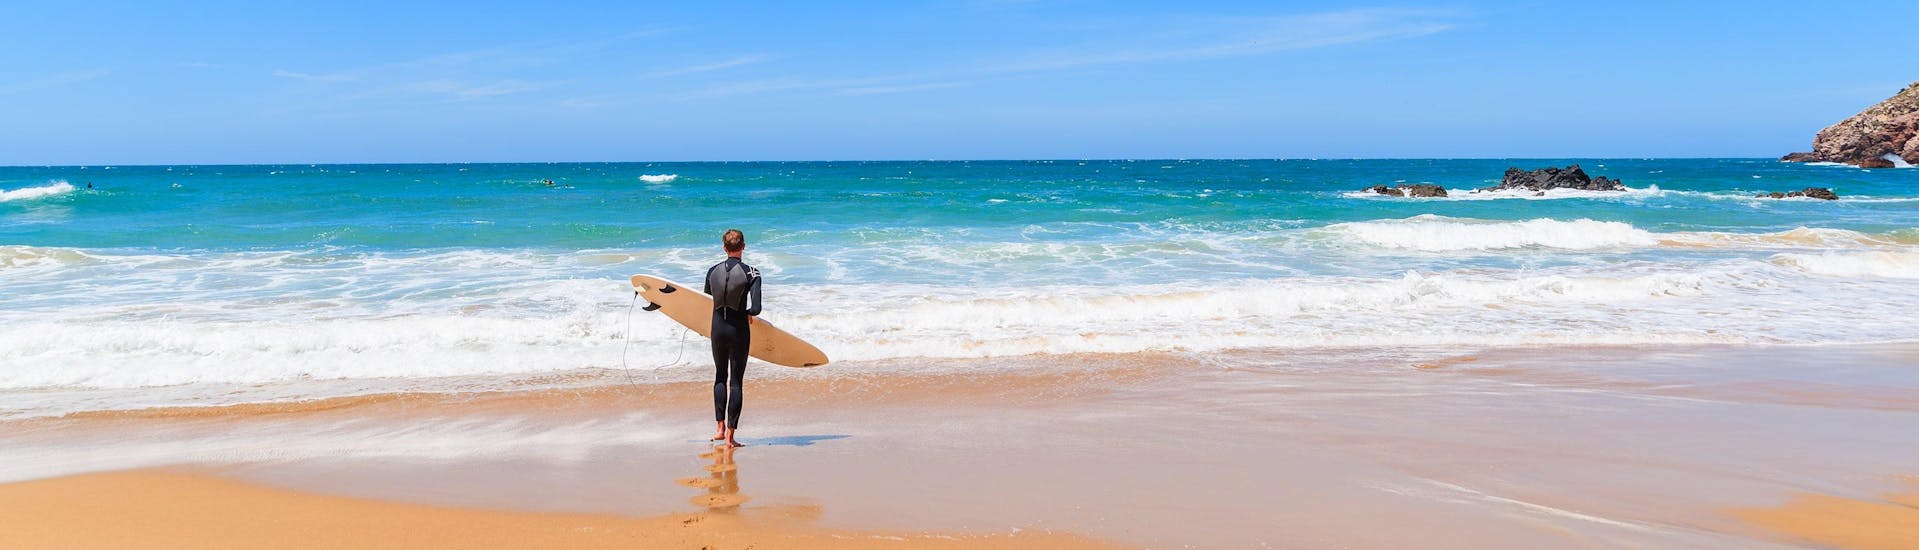 Ein junger Mann in einem Neoprenanzug steht beim Surfen in Arrifana mit seinem Surfbrett an einem Strand und blickt auf den Ozean.